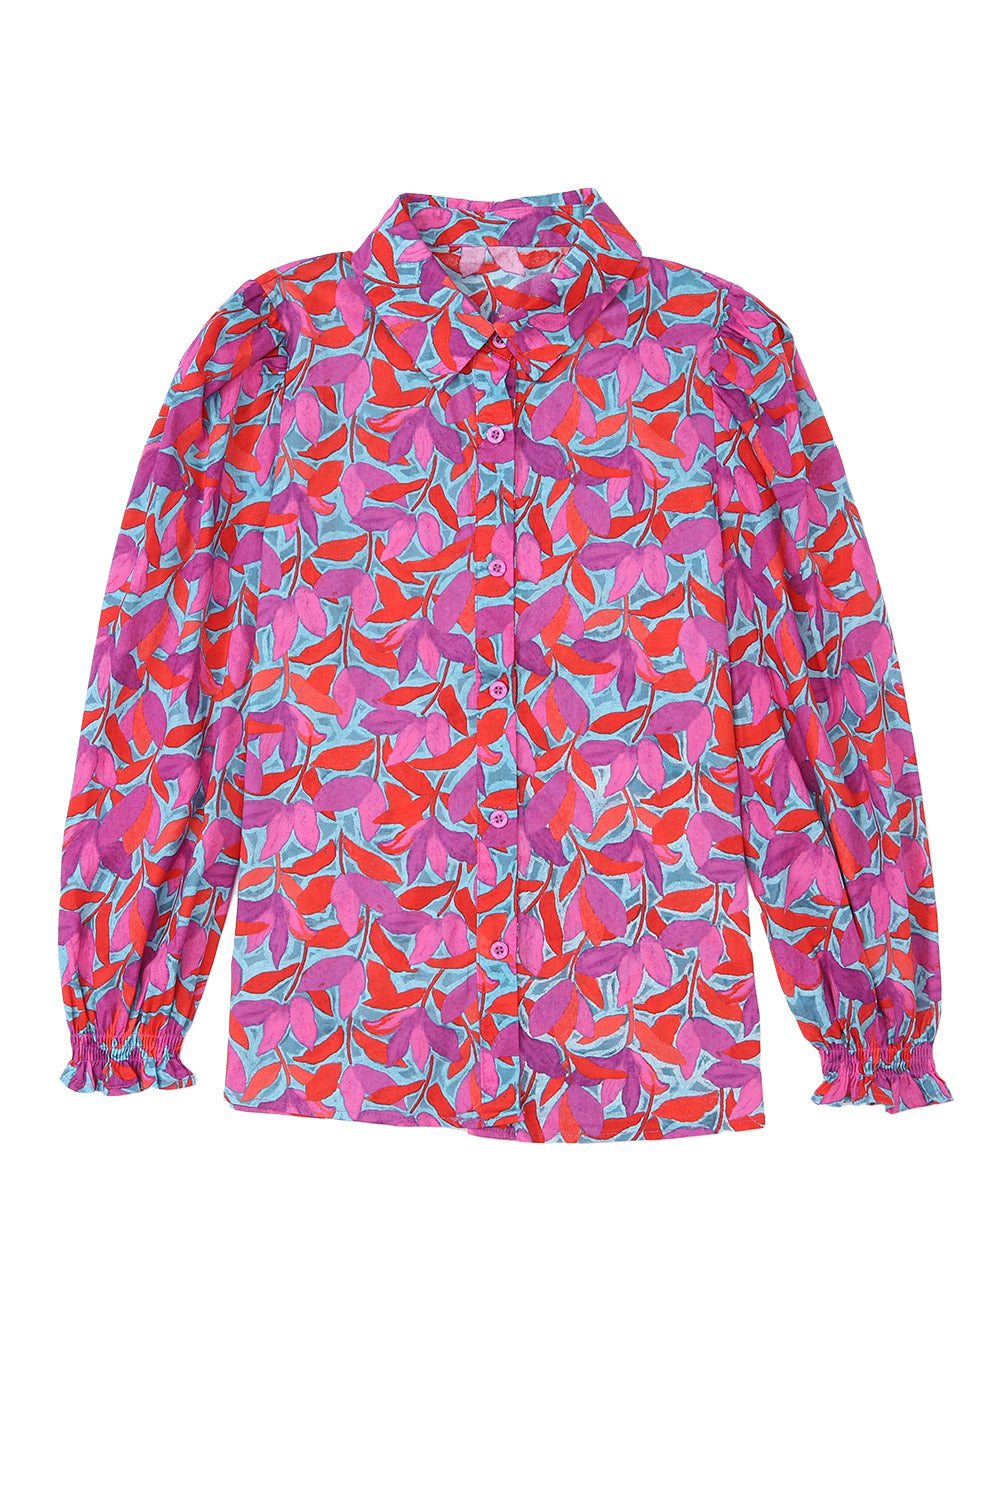 Chemise boutonnée à fleurs abstraites multicolores à manches longues bouffantes